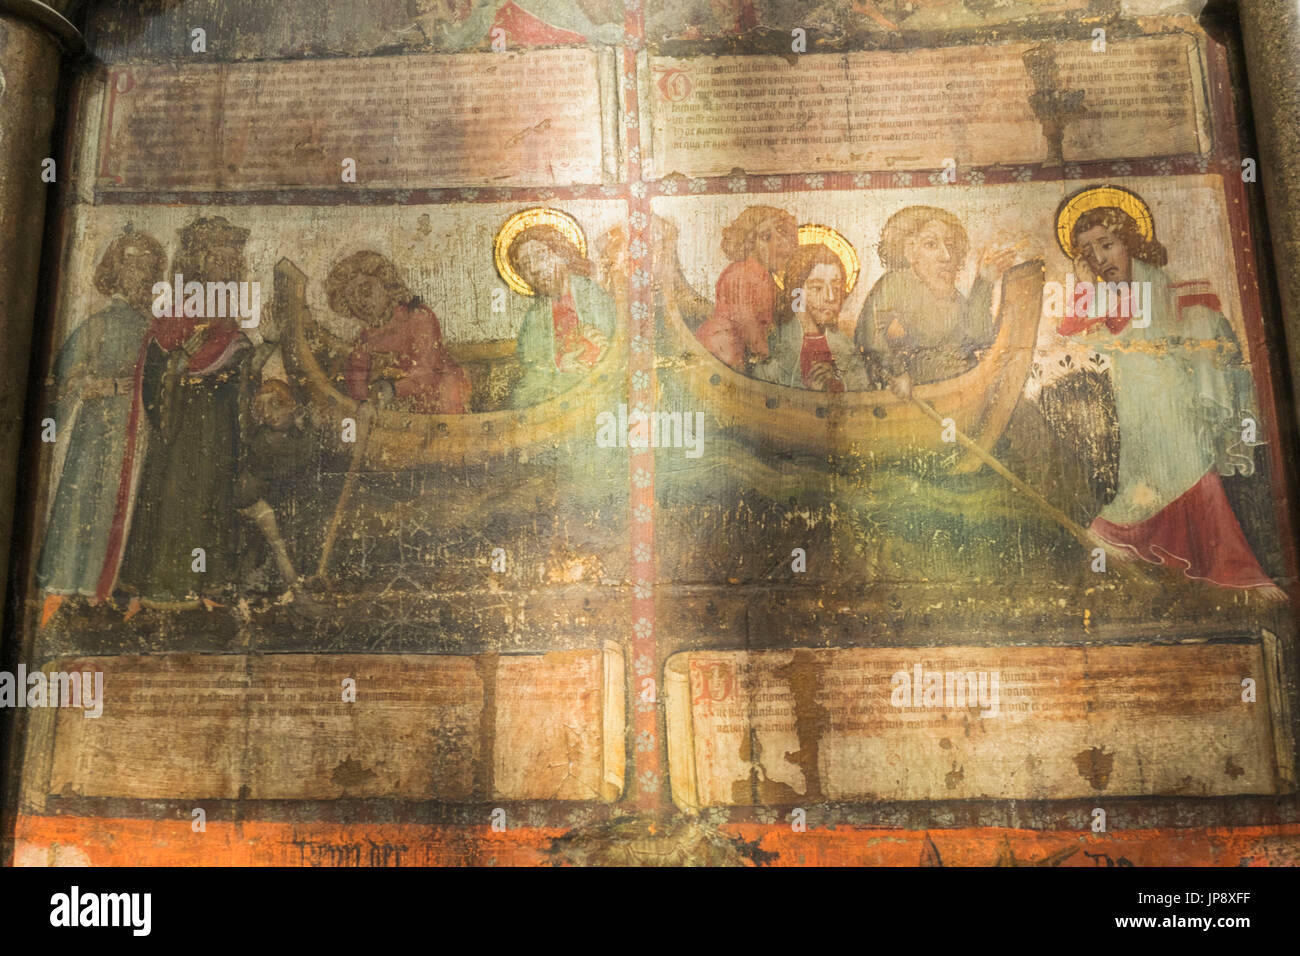 England, London, Westminster Abbey, der Kapitelsaal, Wandmalereien aus dem 1400 zeigt Szenen aus dem Buch der Offenbarung Stockfoto